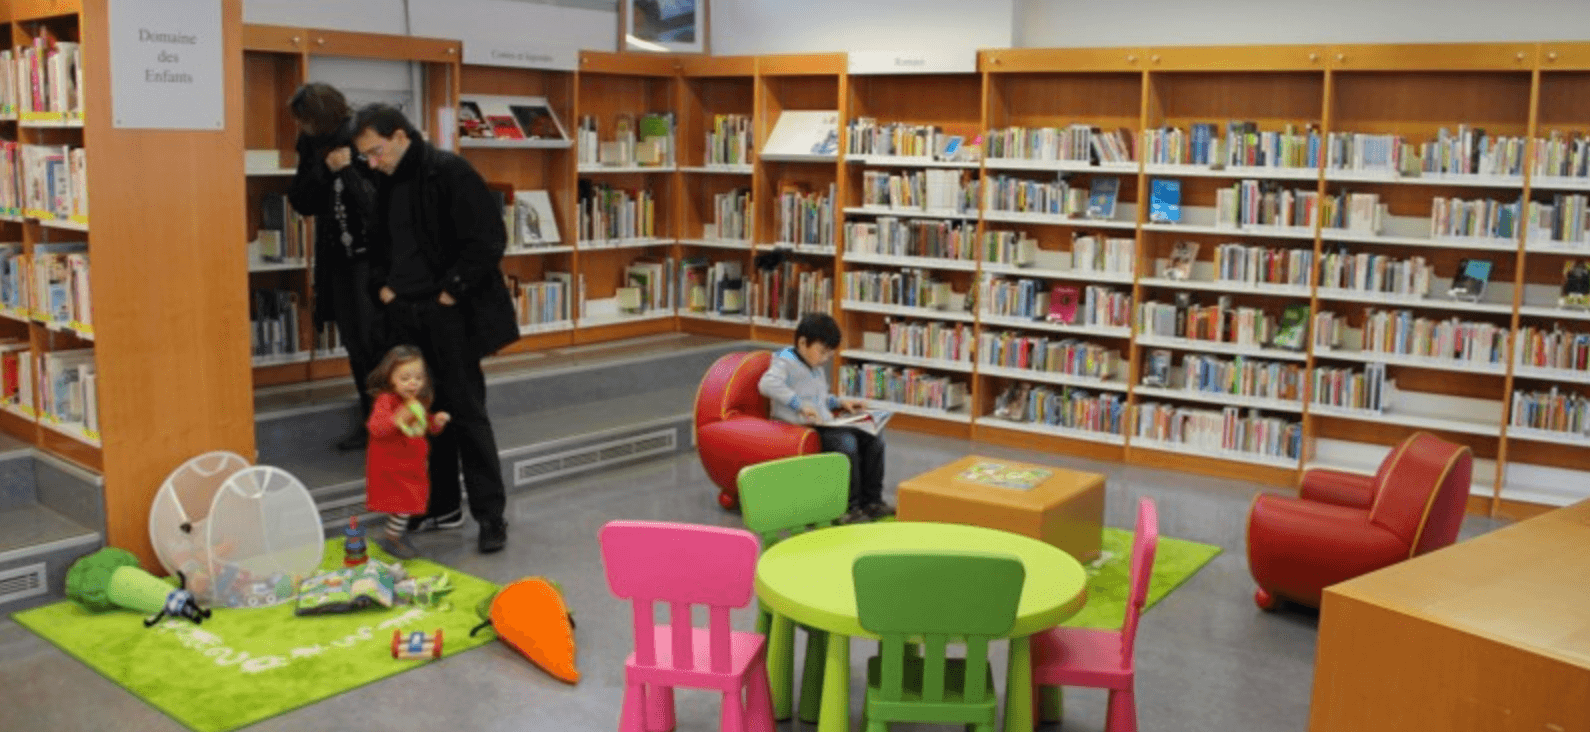 bibliotheque enfants bordeaux